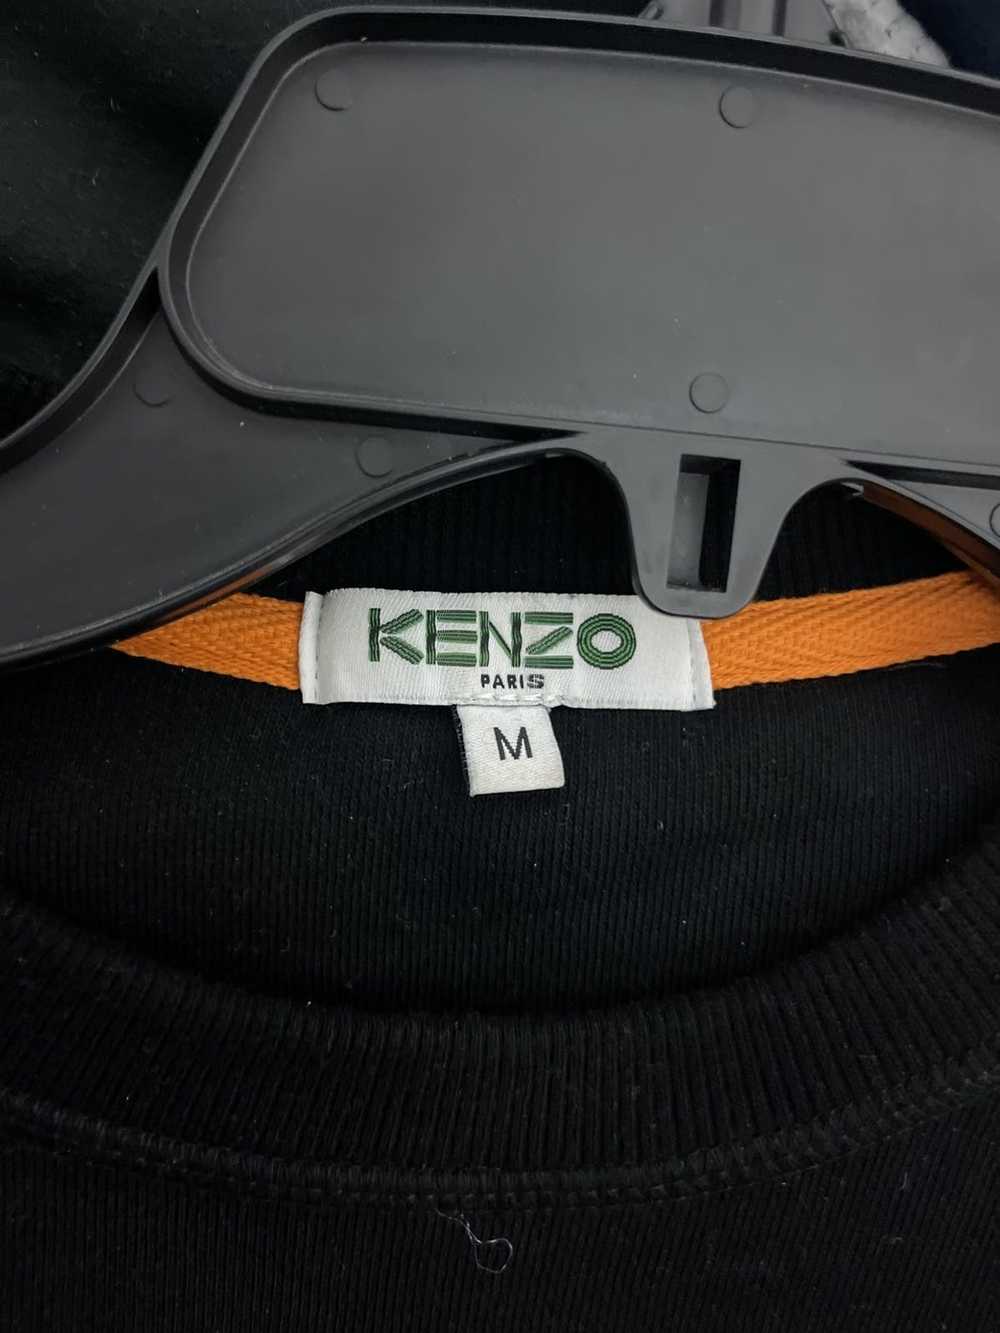 Kenzo Kenzo Sweater - image 2